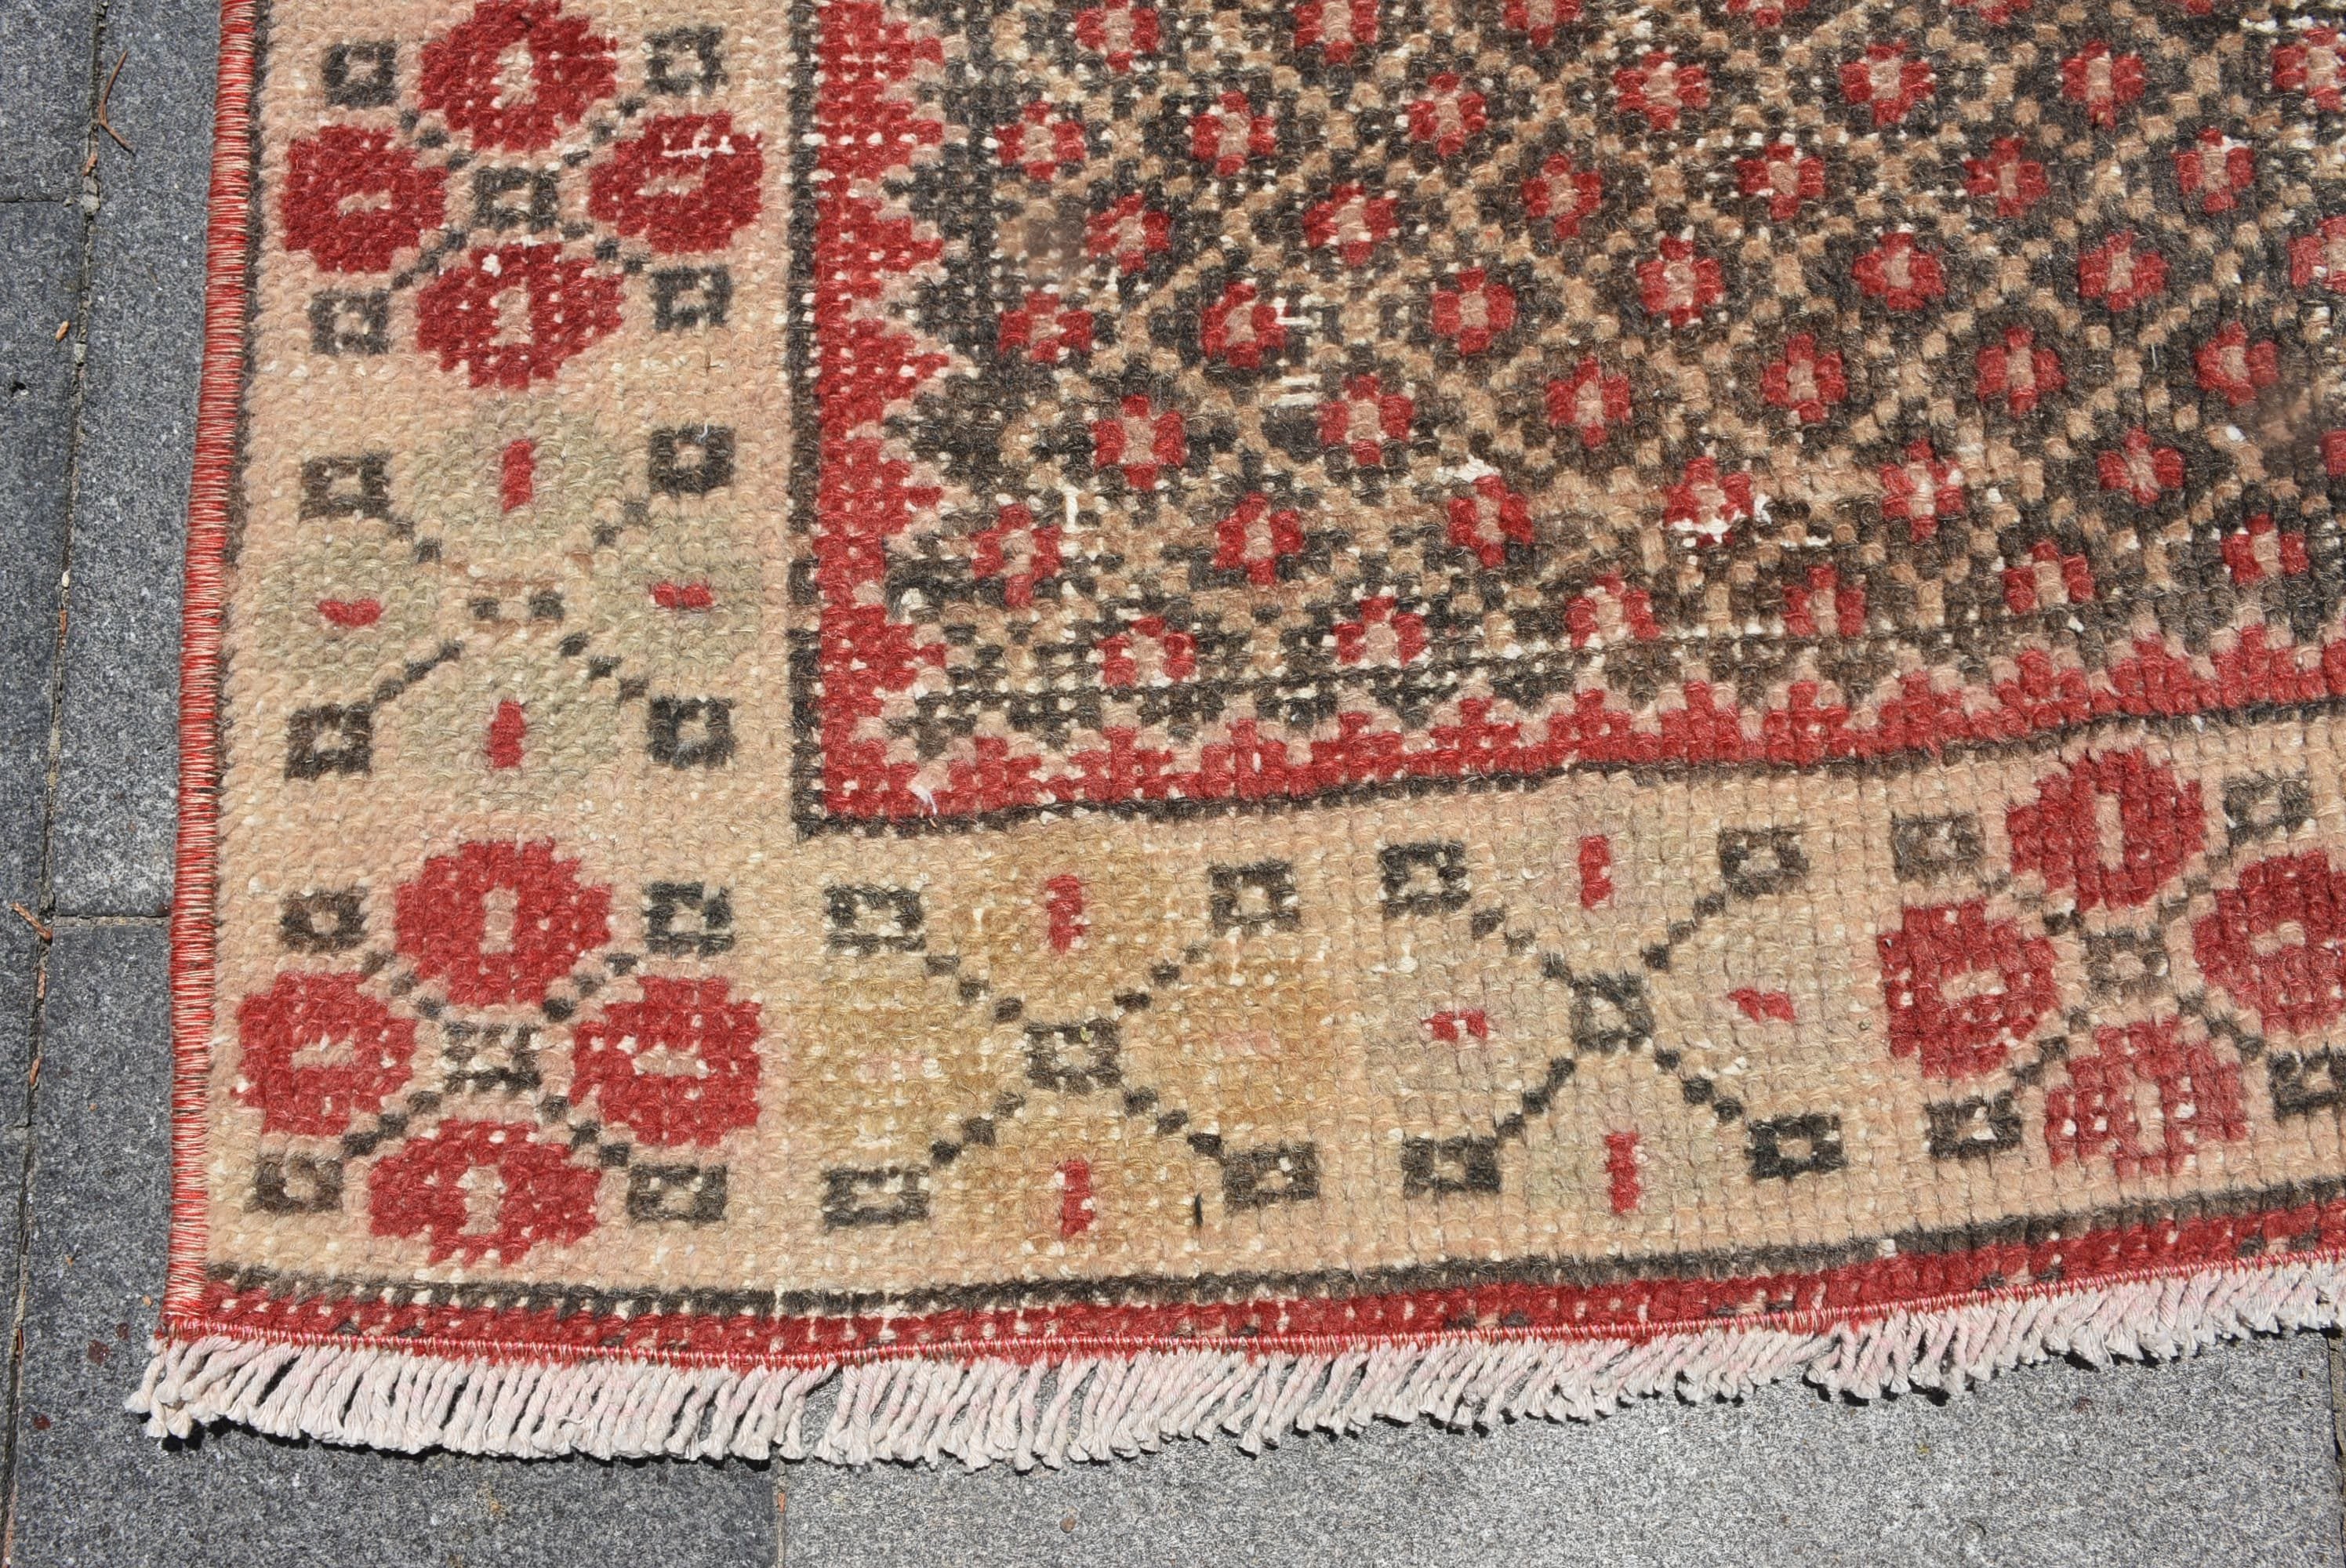 3.8x8.7 ft Area Rug, Moroccan Rug, Red Wool Rug, Nursery Rugs, Turkish Rug, Rugs for Floor, Vintage Rugs, Dining Room Rug